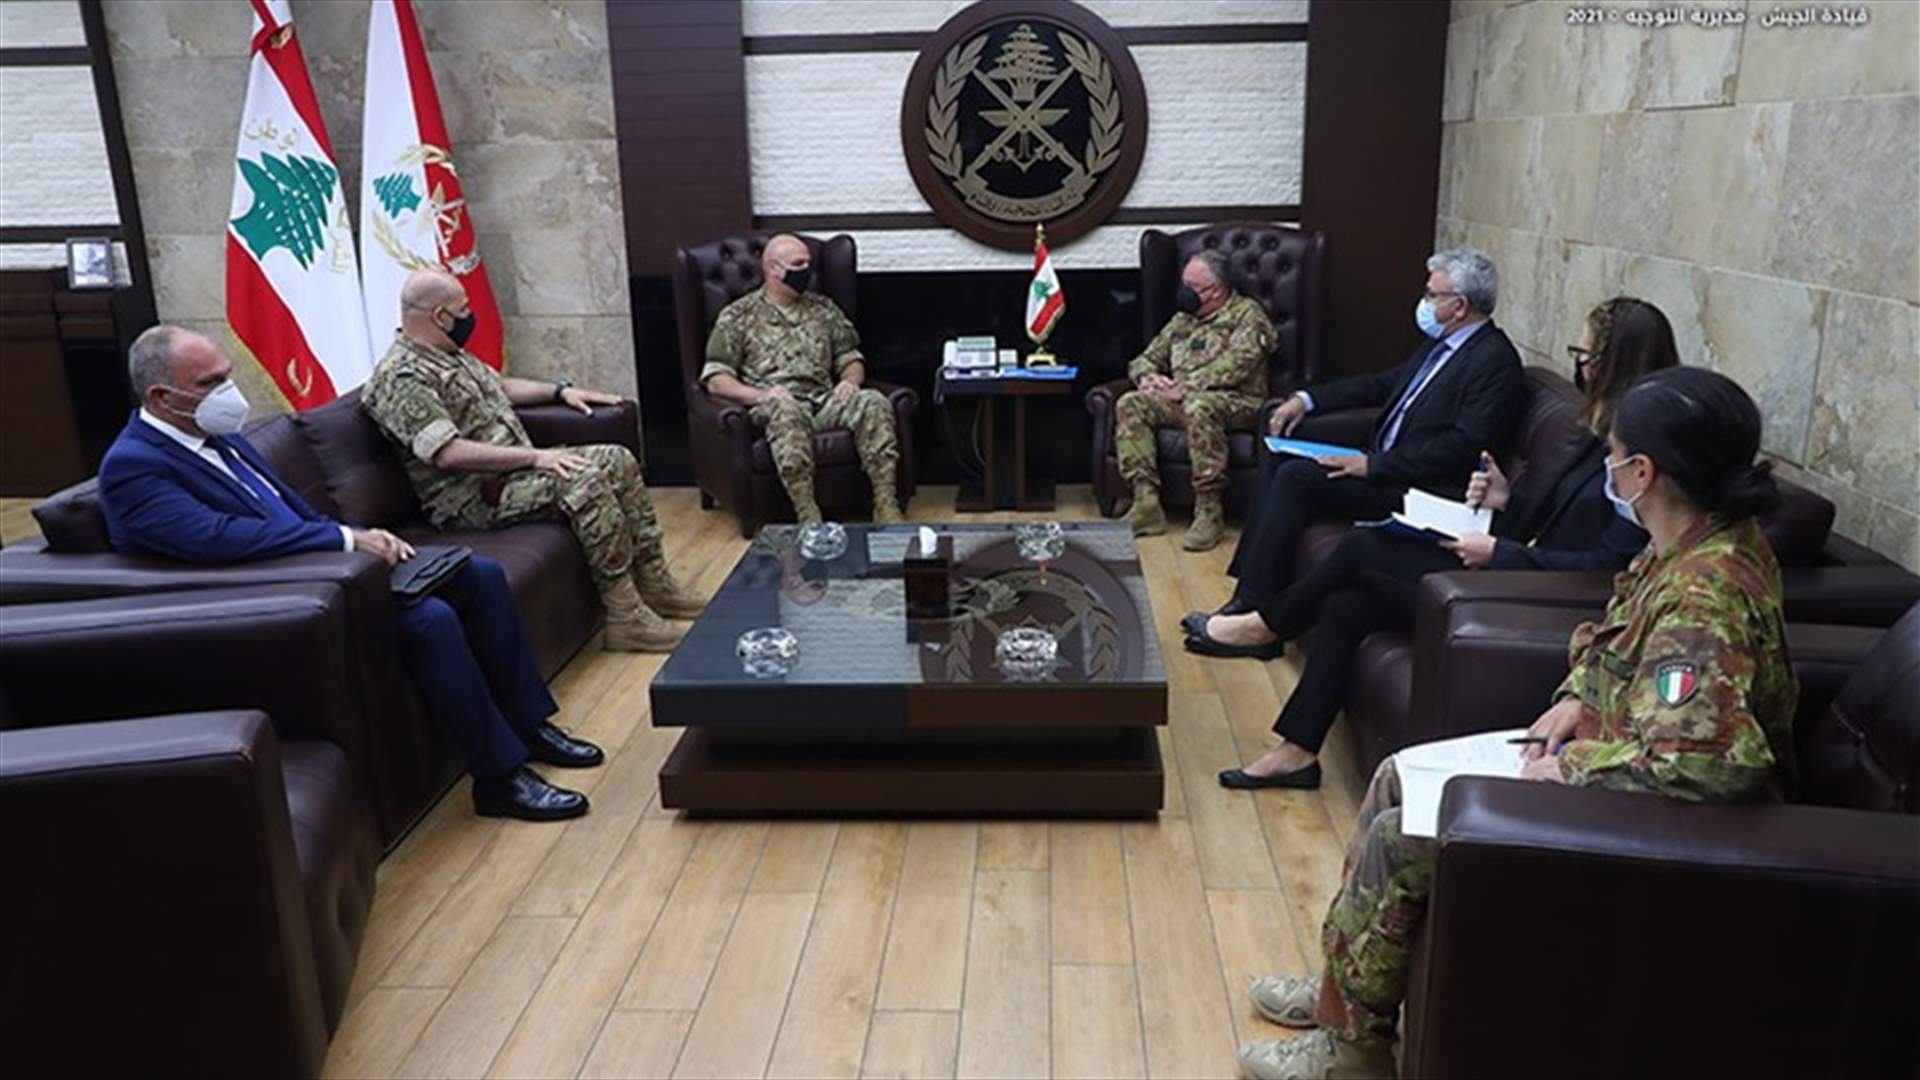 قائد الجيش بحث مع قائد اليونيفيل والمنسقة الخاصة للأمم المتحدة في لبنان بالأوضاع العامة